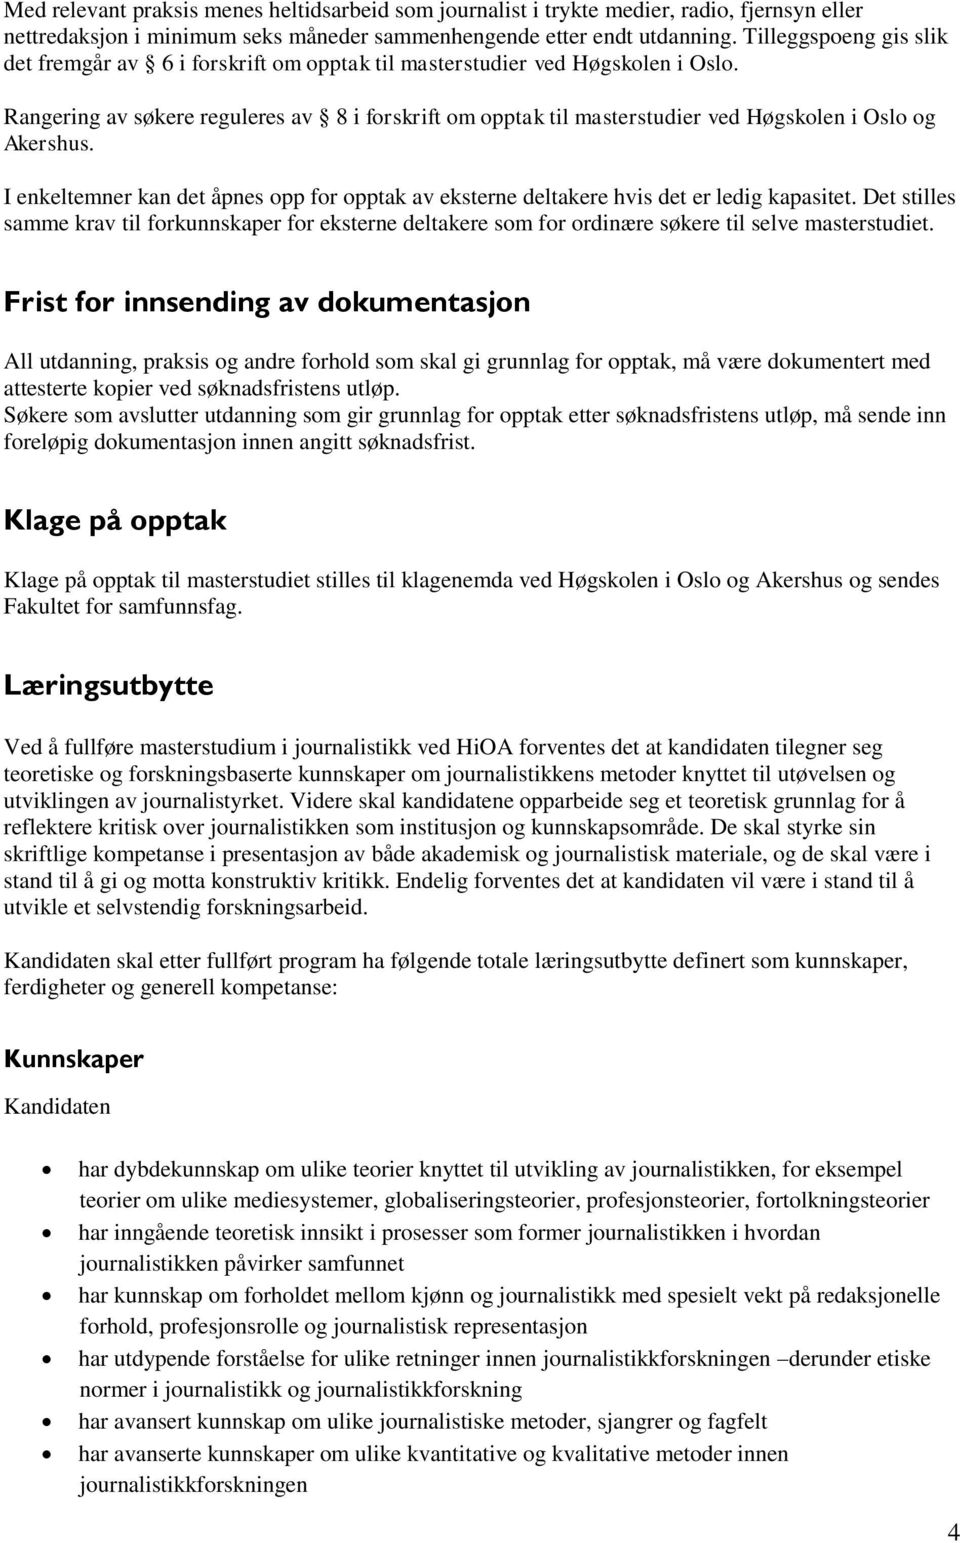 Rangering av søkere reguleres av 8 i forskrift om opptak til masterstudier ved Høgskolen i Oslo og Akershus.